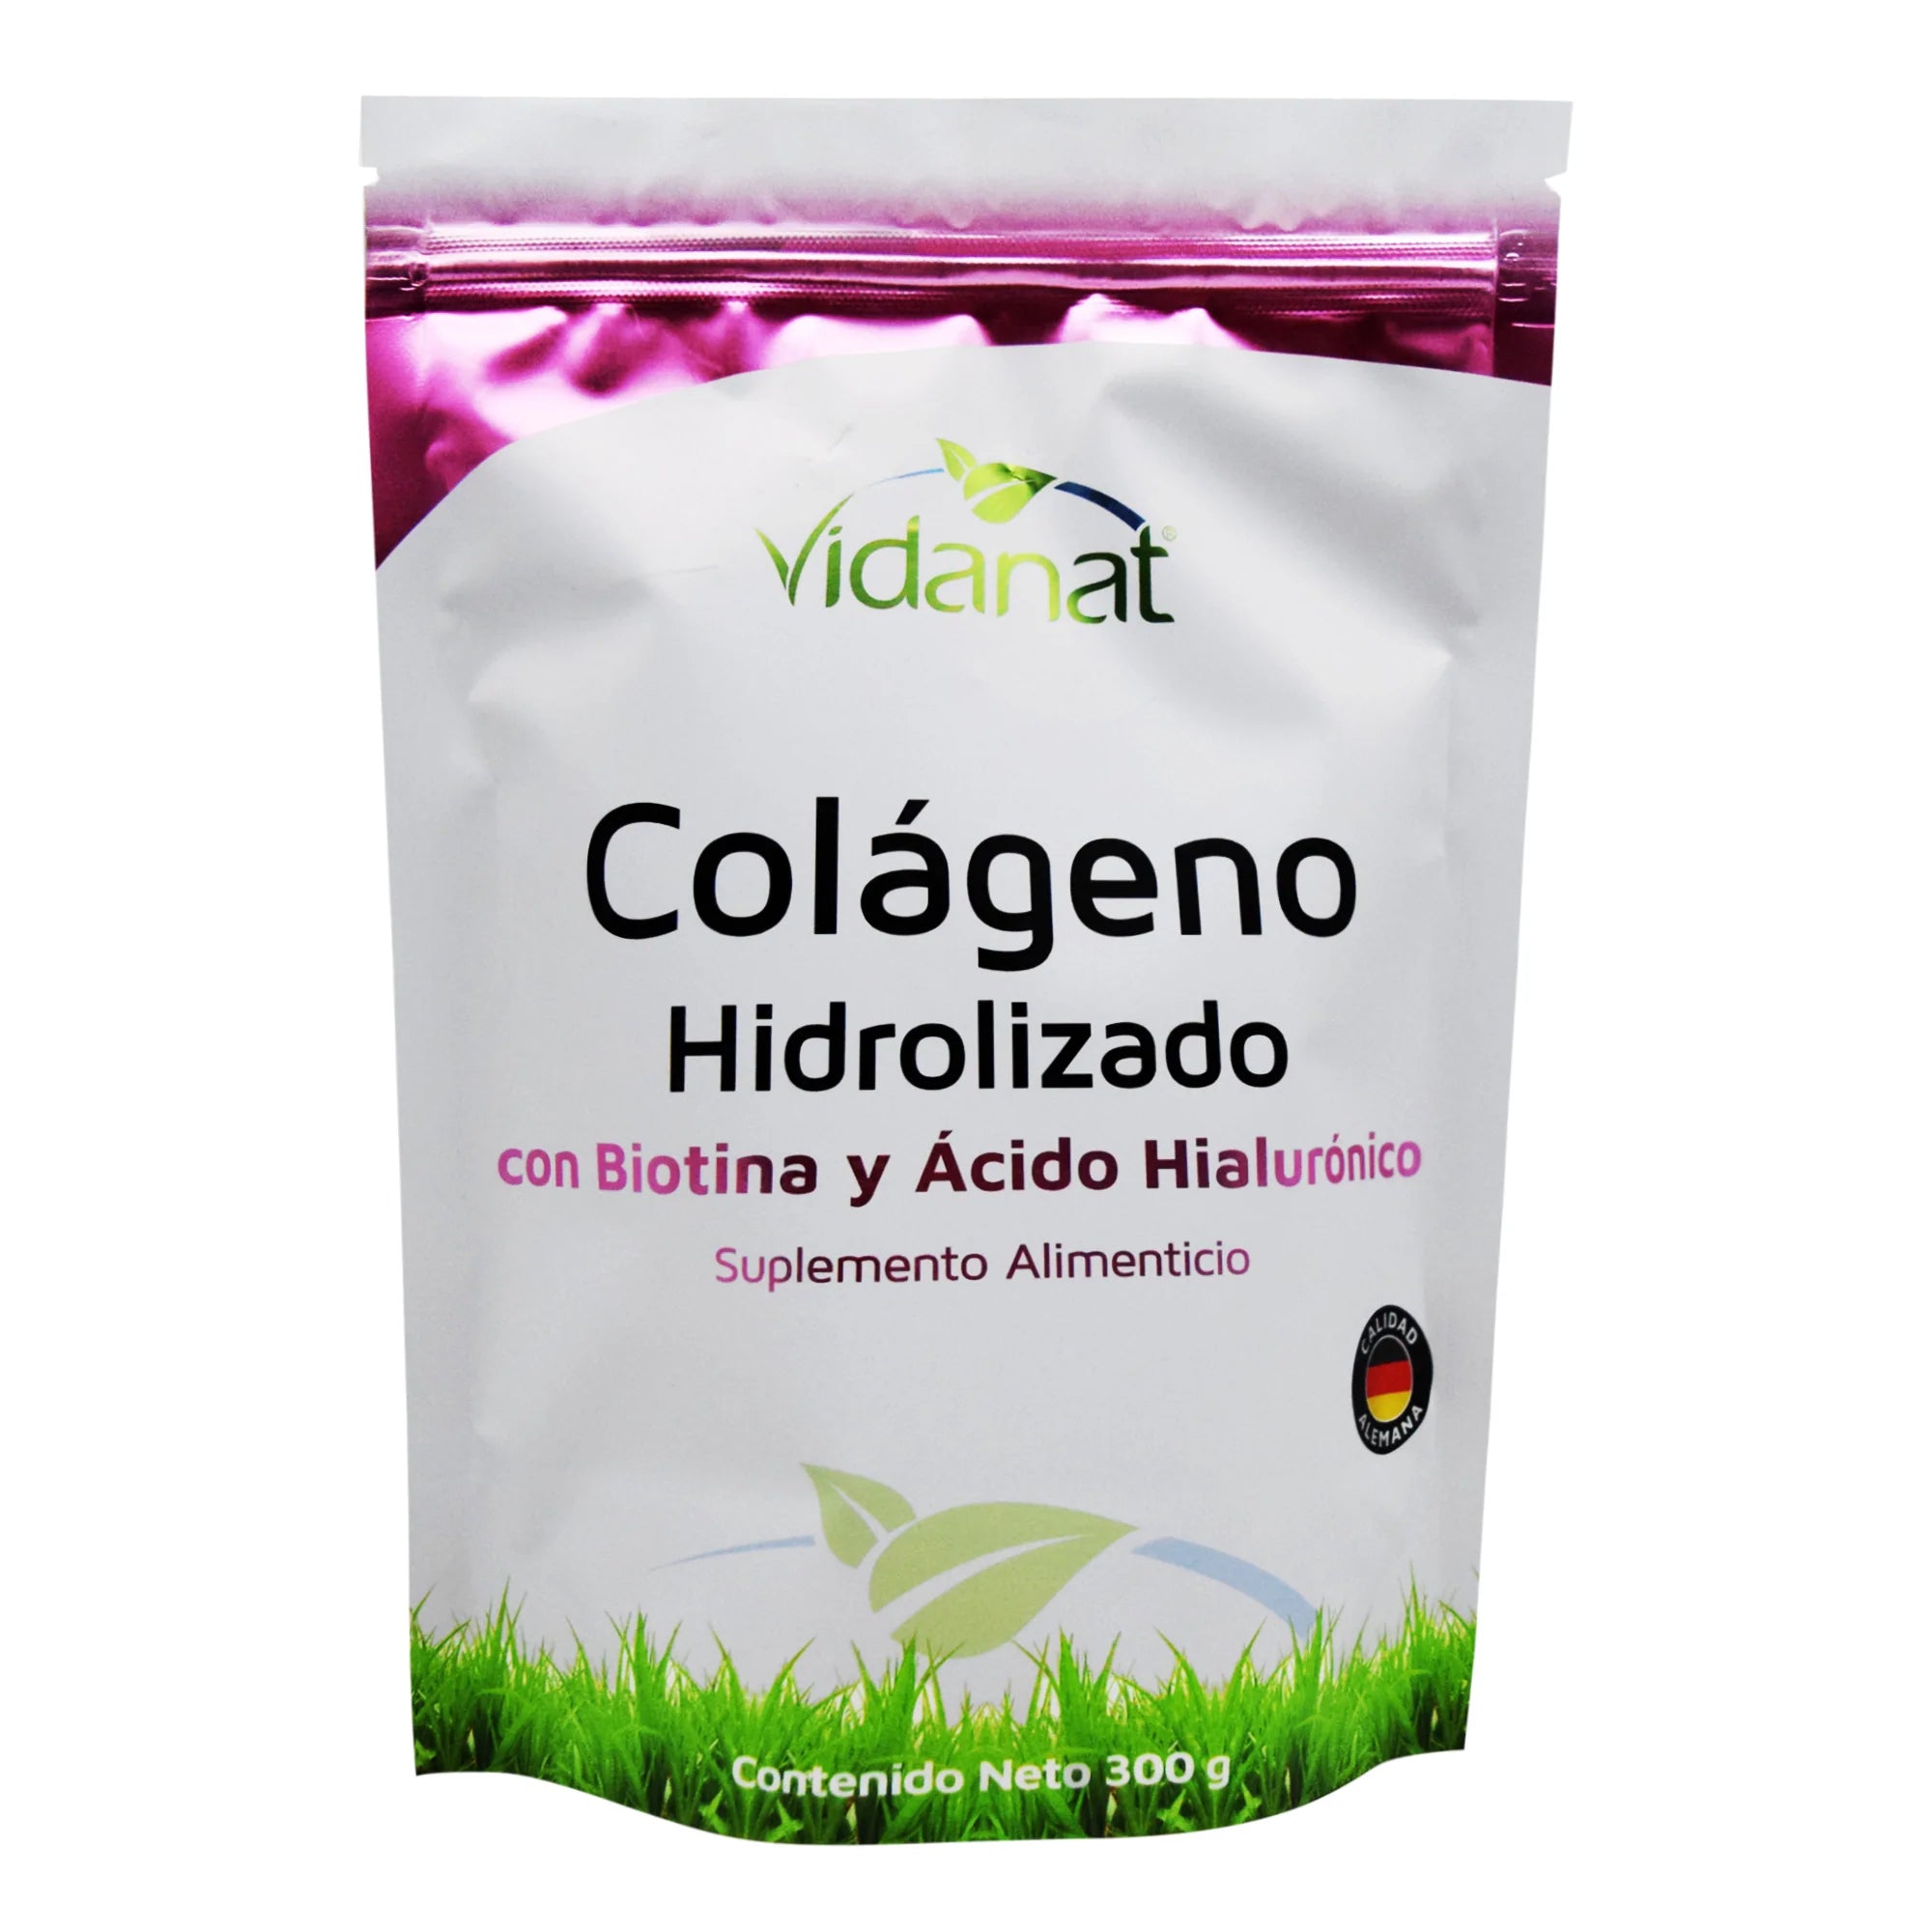 Colageno Hidrolizado Puro, Biotina, Ácido Hialurónico 300 g